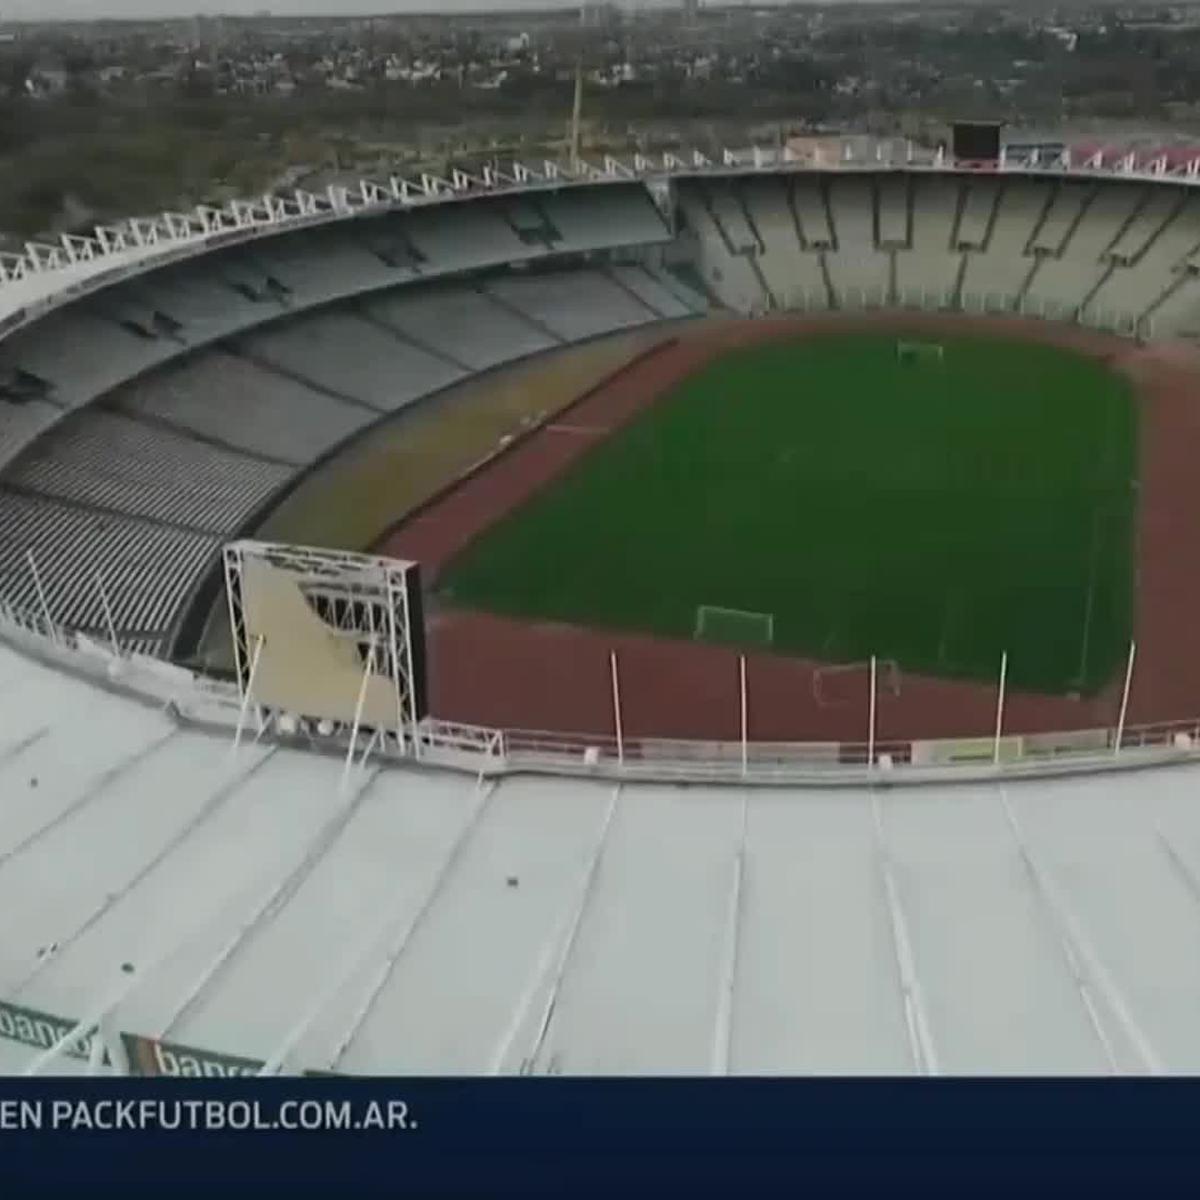 La final de la Copa Sudamericana se jugará en el Estadio Mario